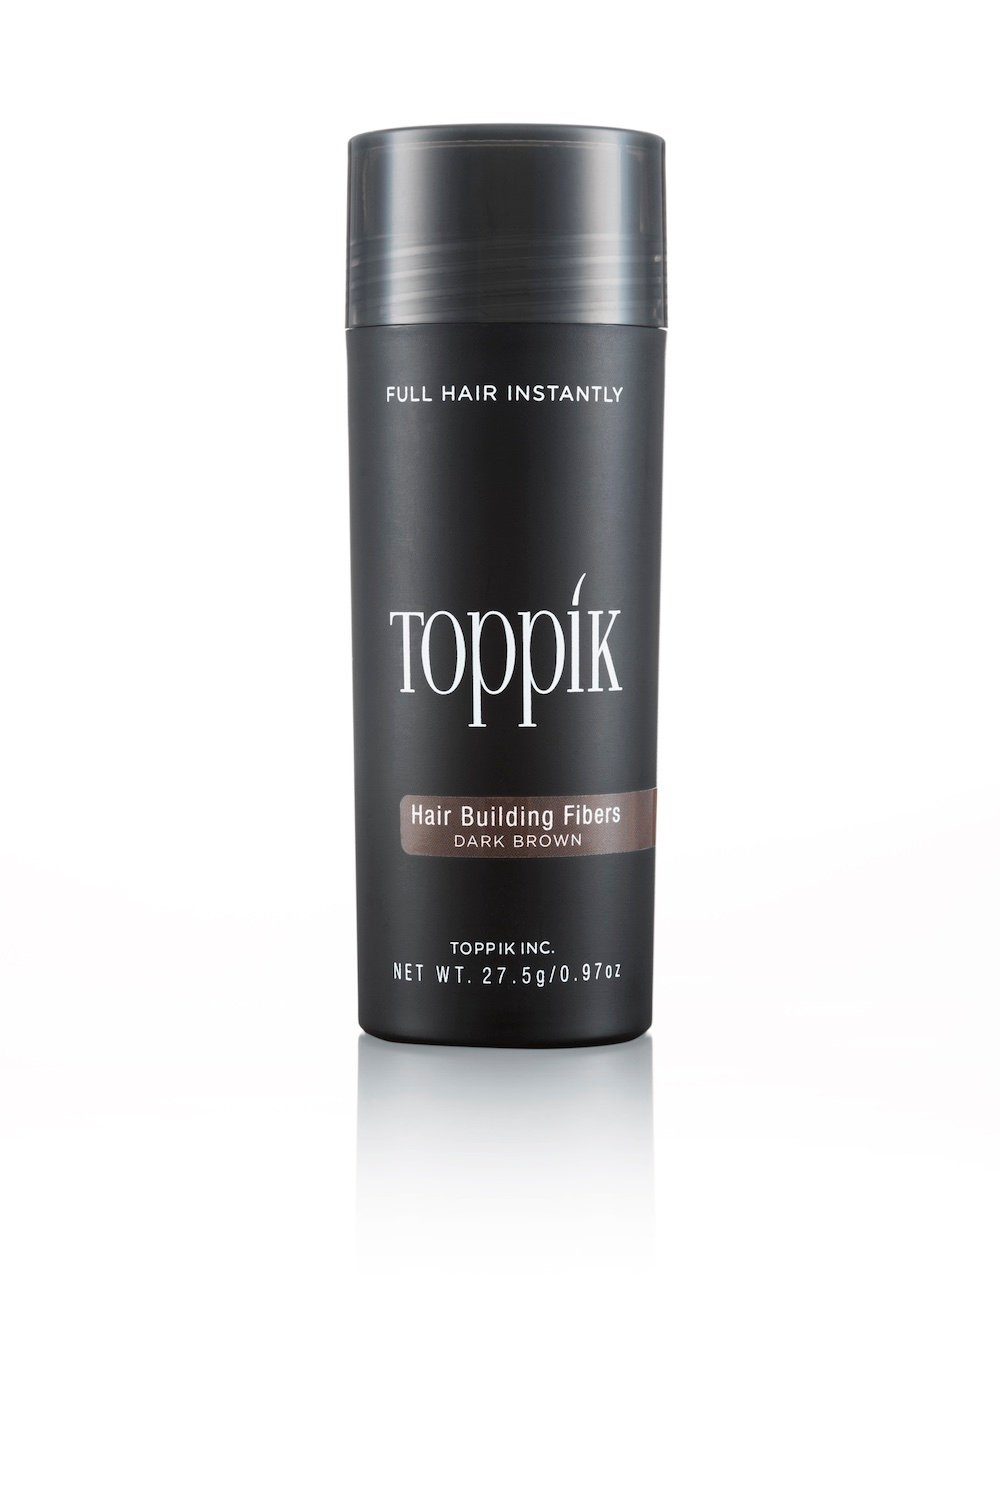 TOPPIK Haarstyling-Set TOPPIK 27,5 g. - Streuhaar, Schütthaar, Haarverdichtung, Haarfasern, Puder, Hair Fibers Dunkelbraun